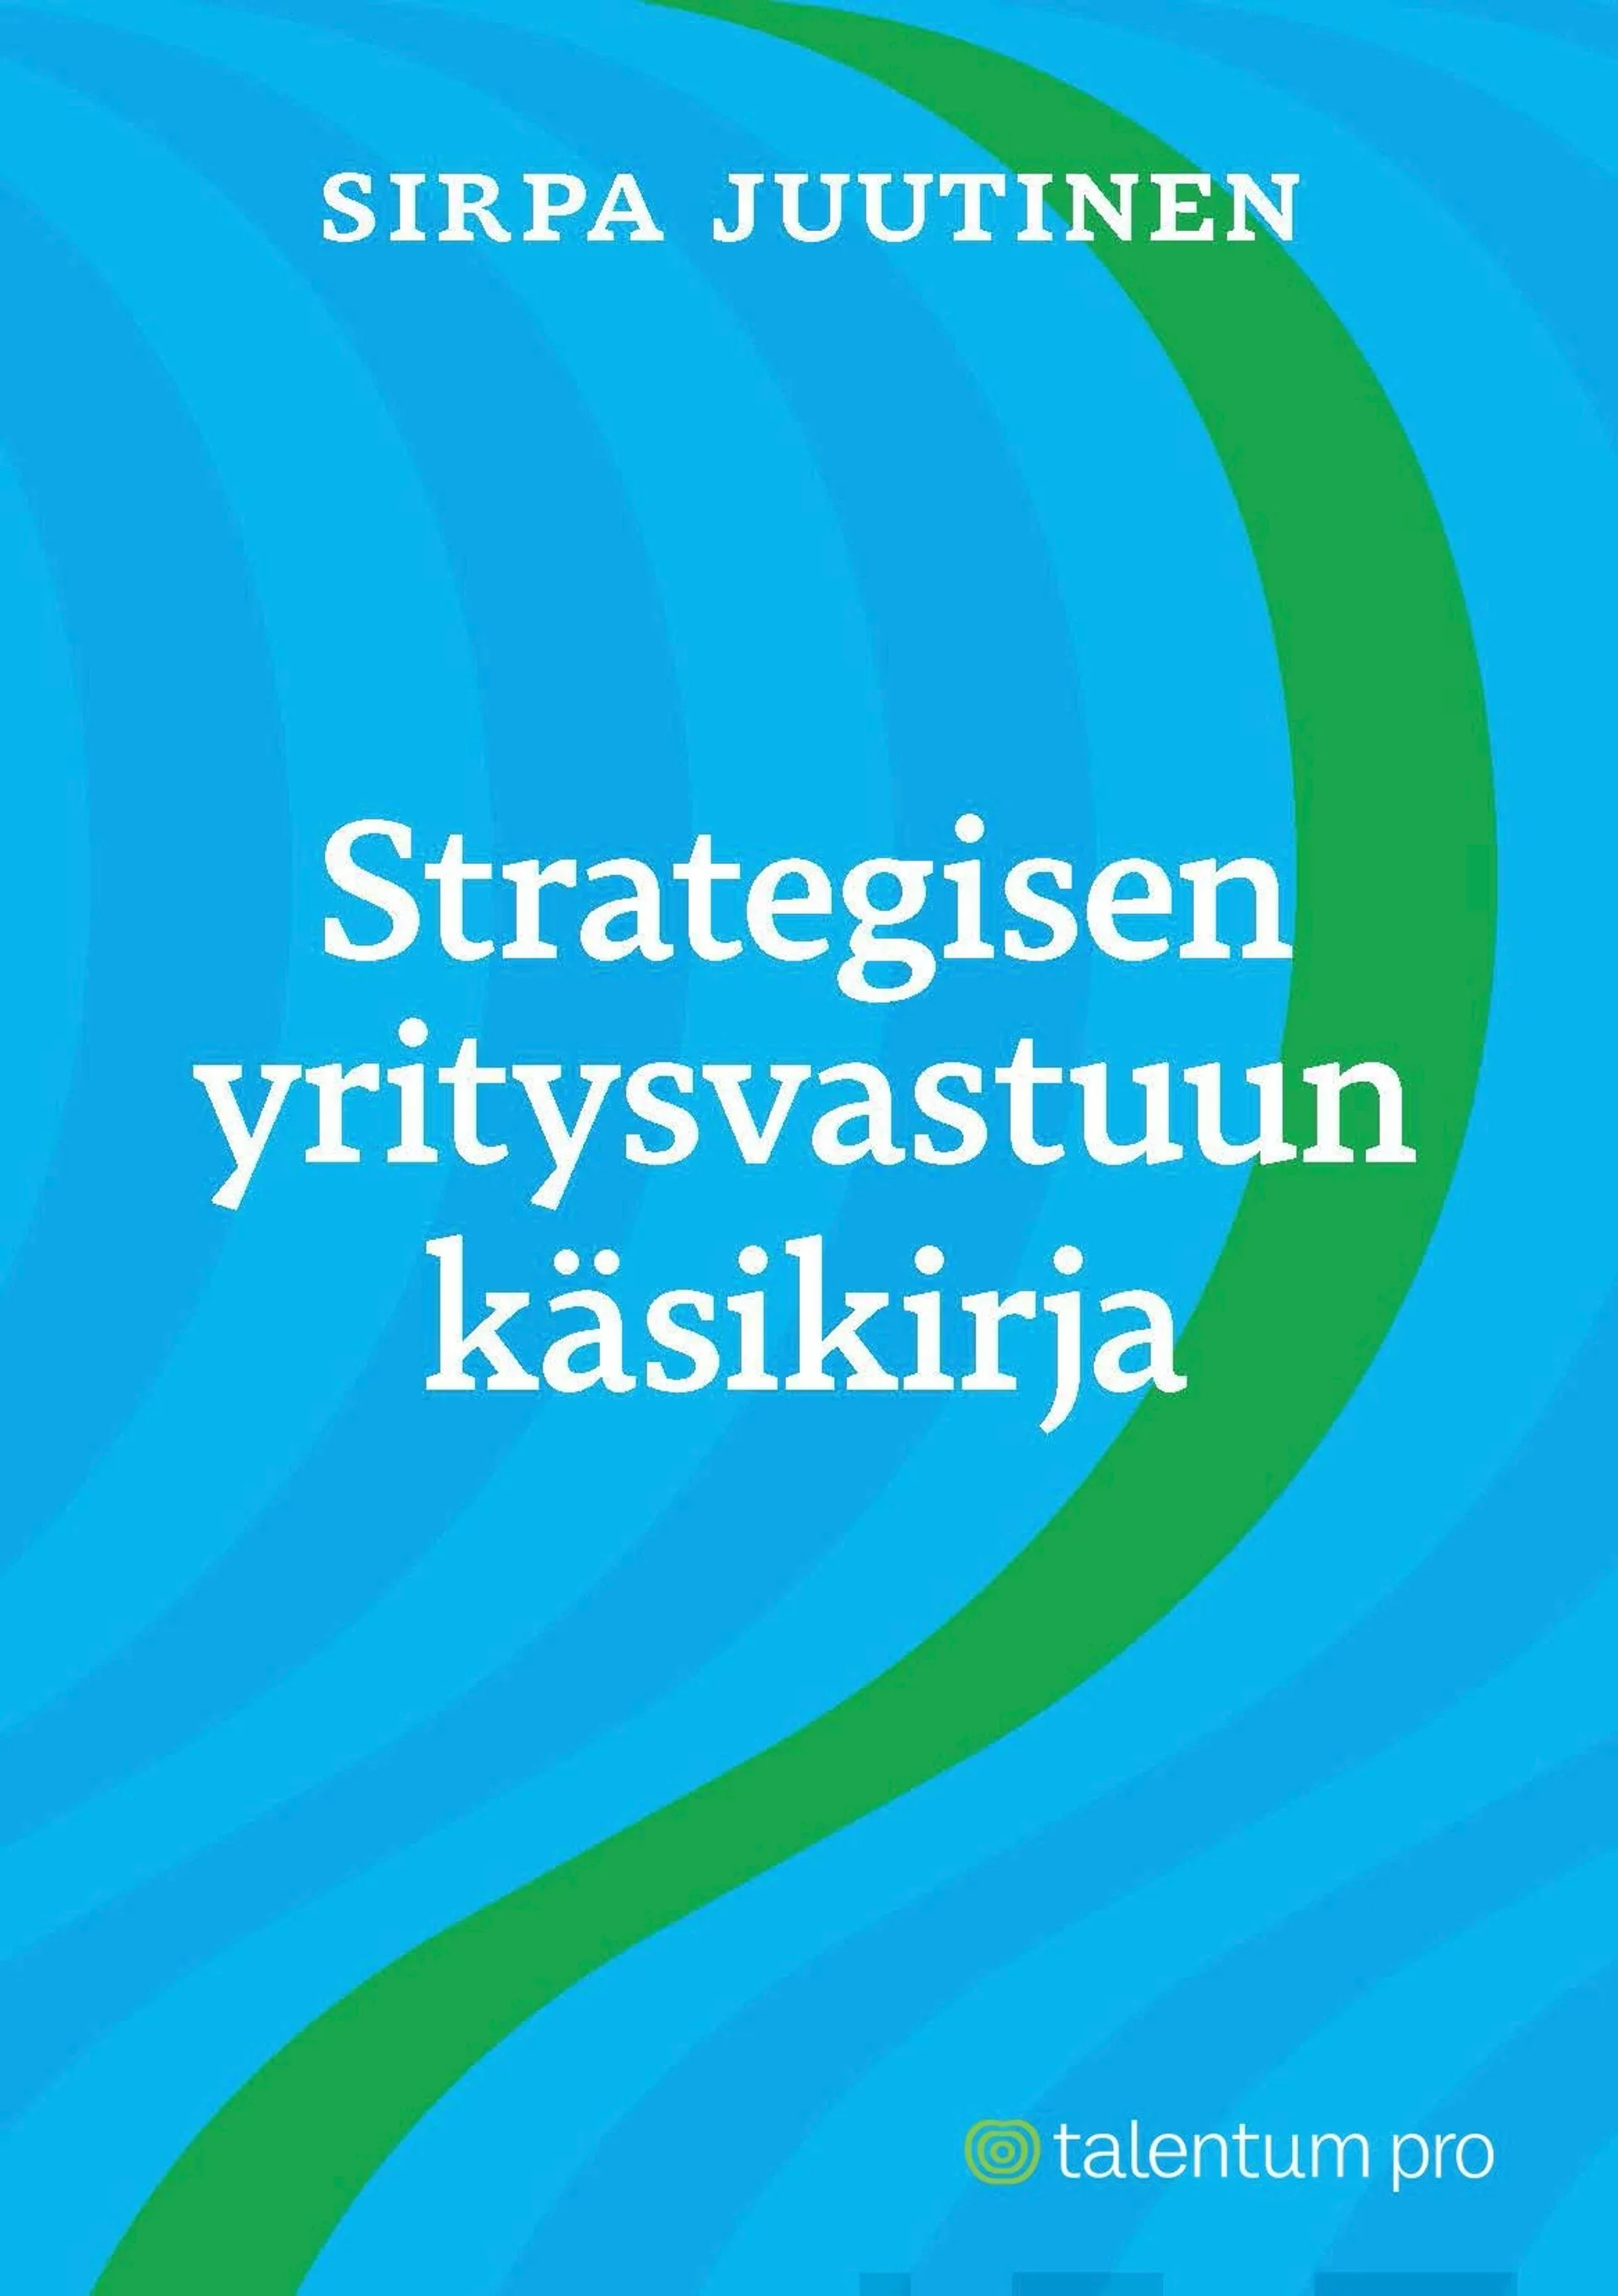 Juutinen, Strategisen yritysvastuun käsikirja